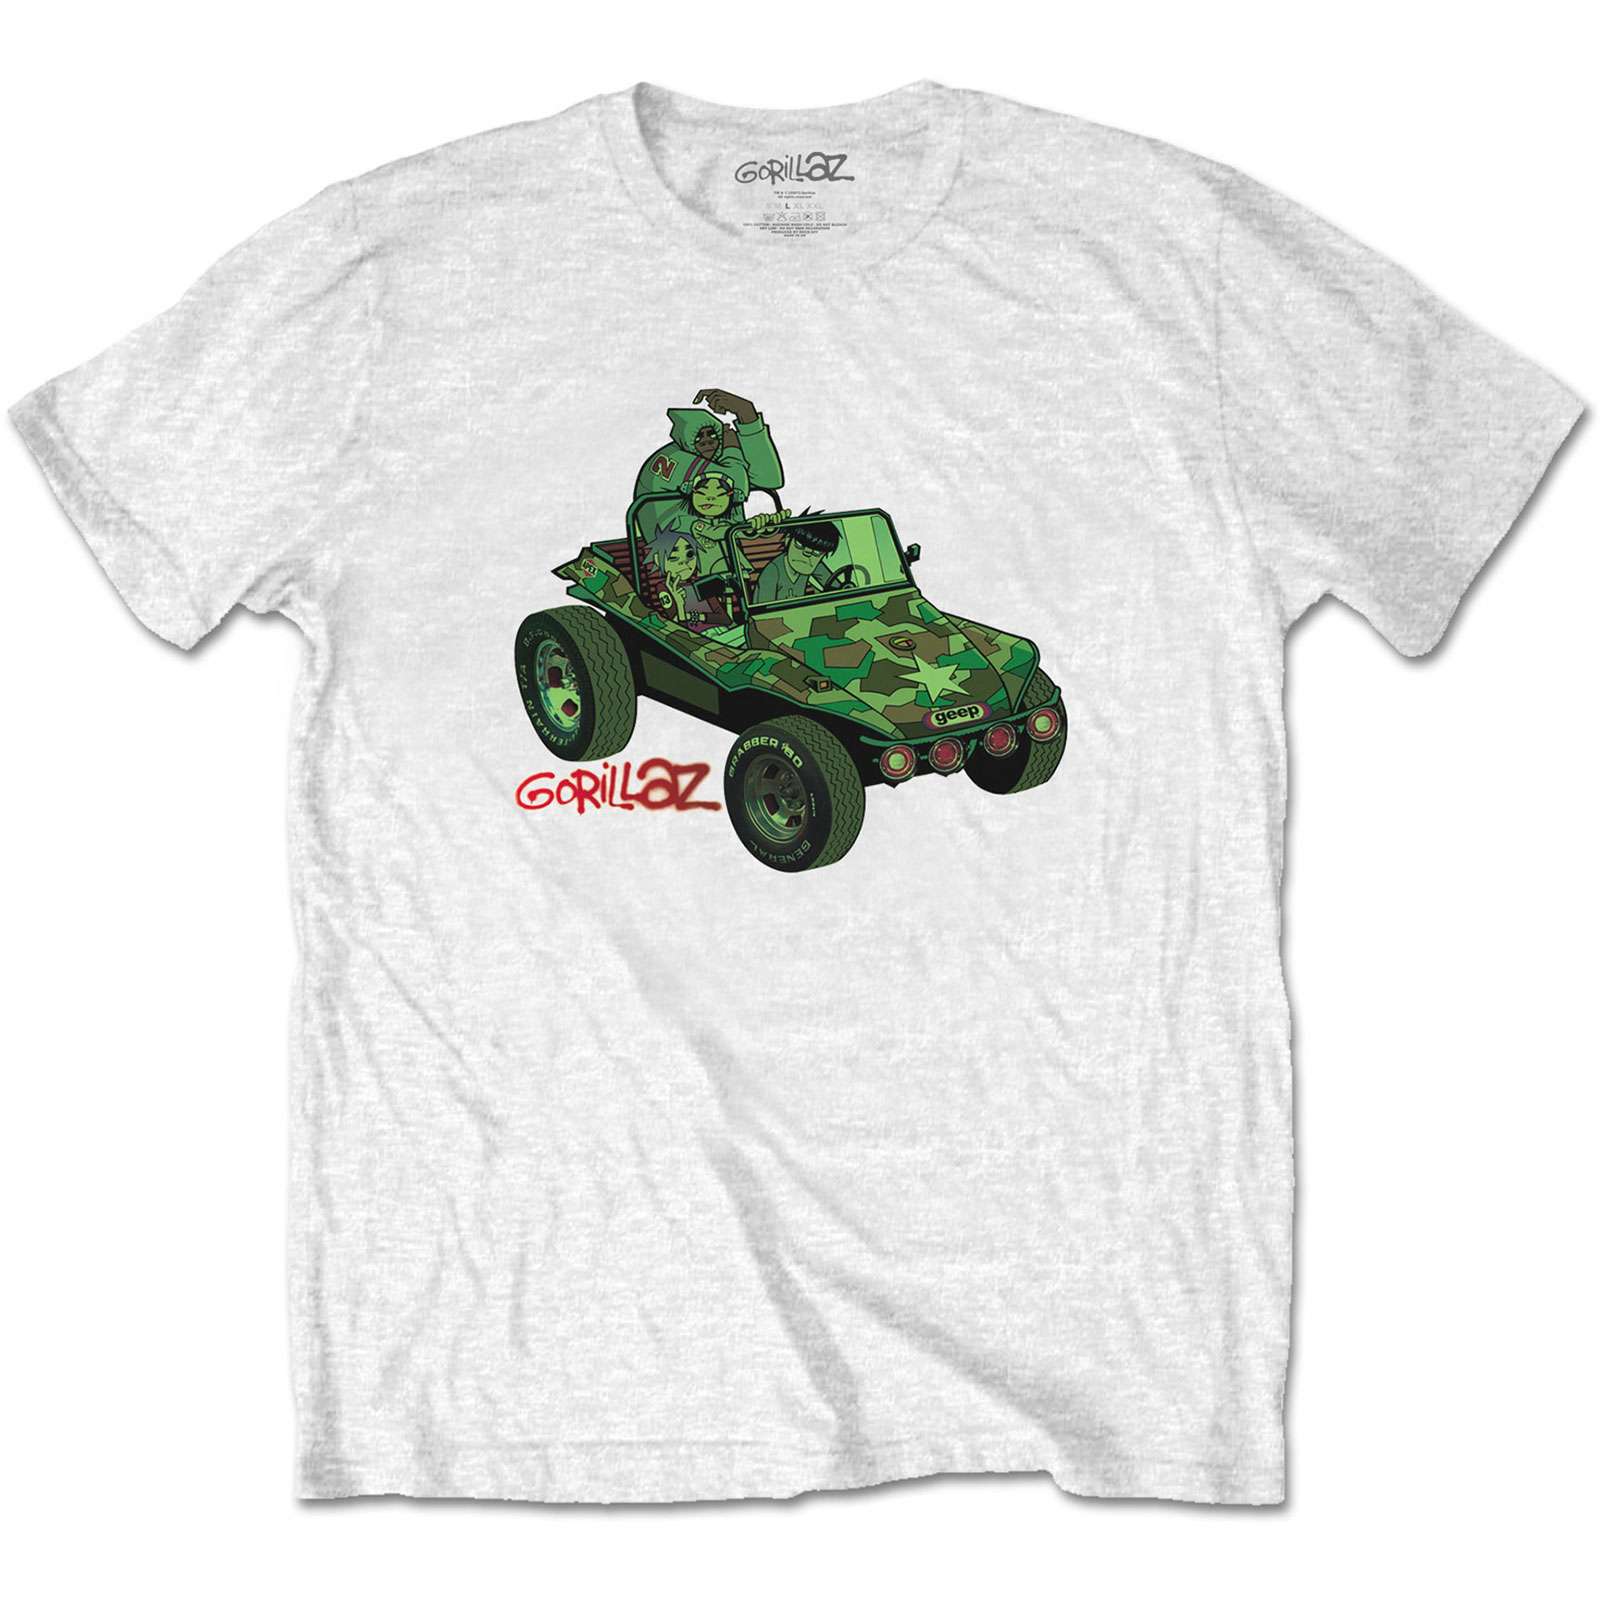 Gorillaz Official Shirt Jeep